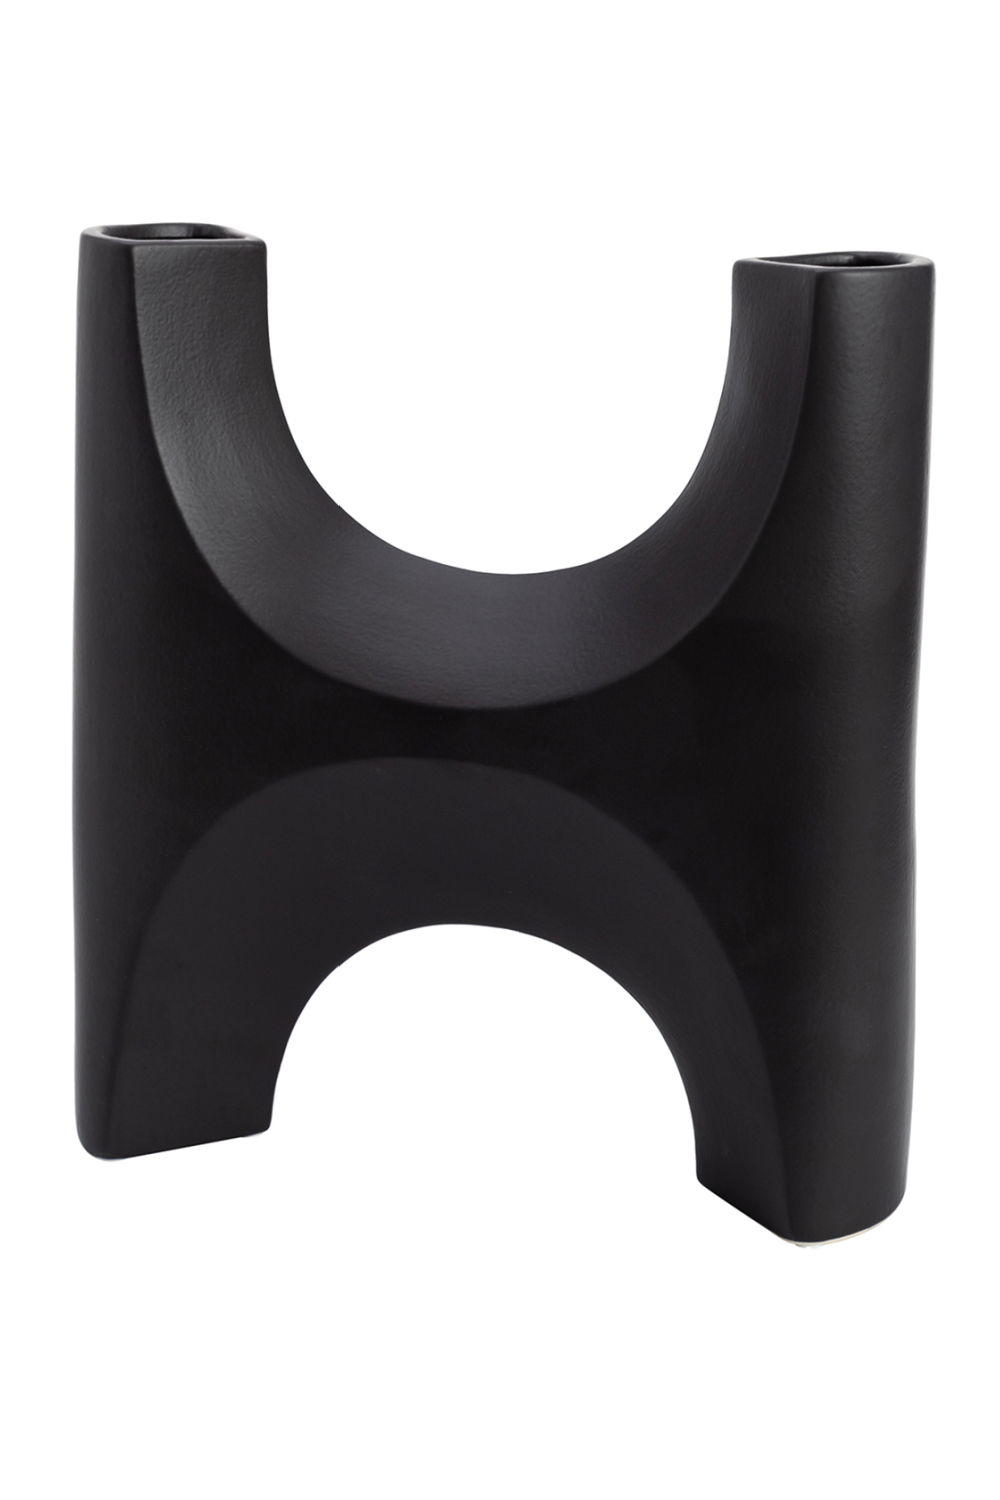 Hand-Glazed Black Ceramic Vase | Liang & Eimil Savier | OROA.com